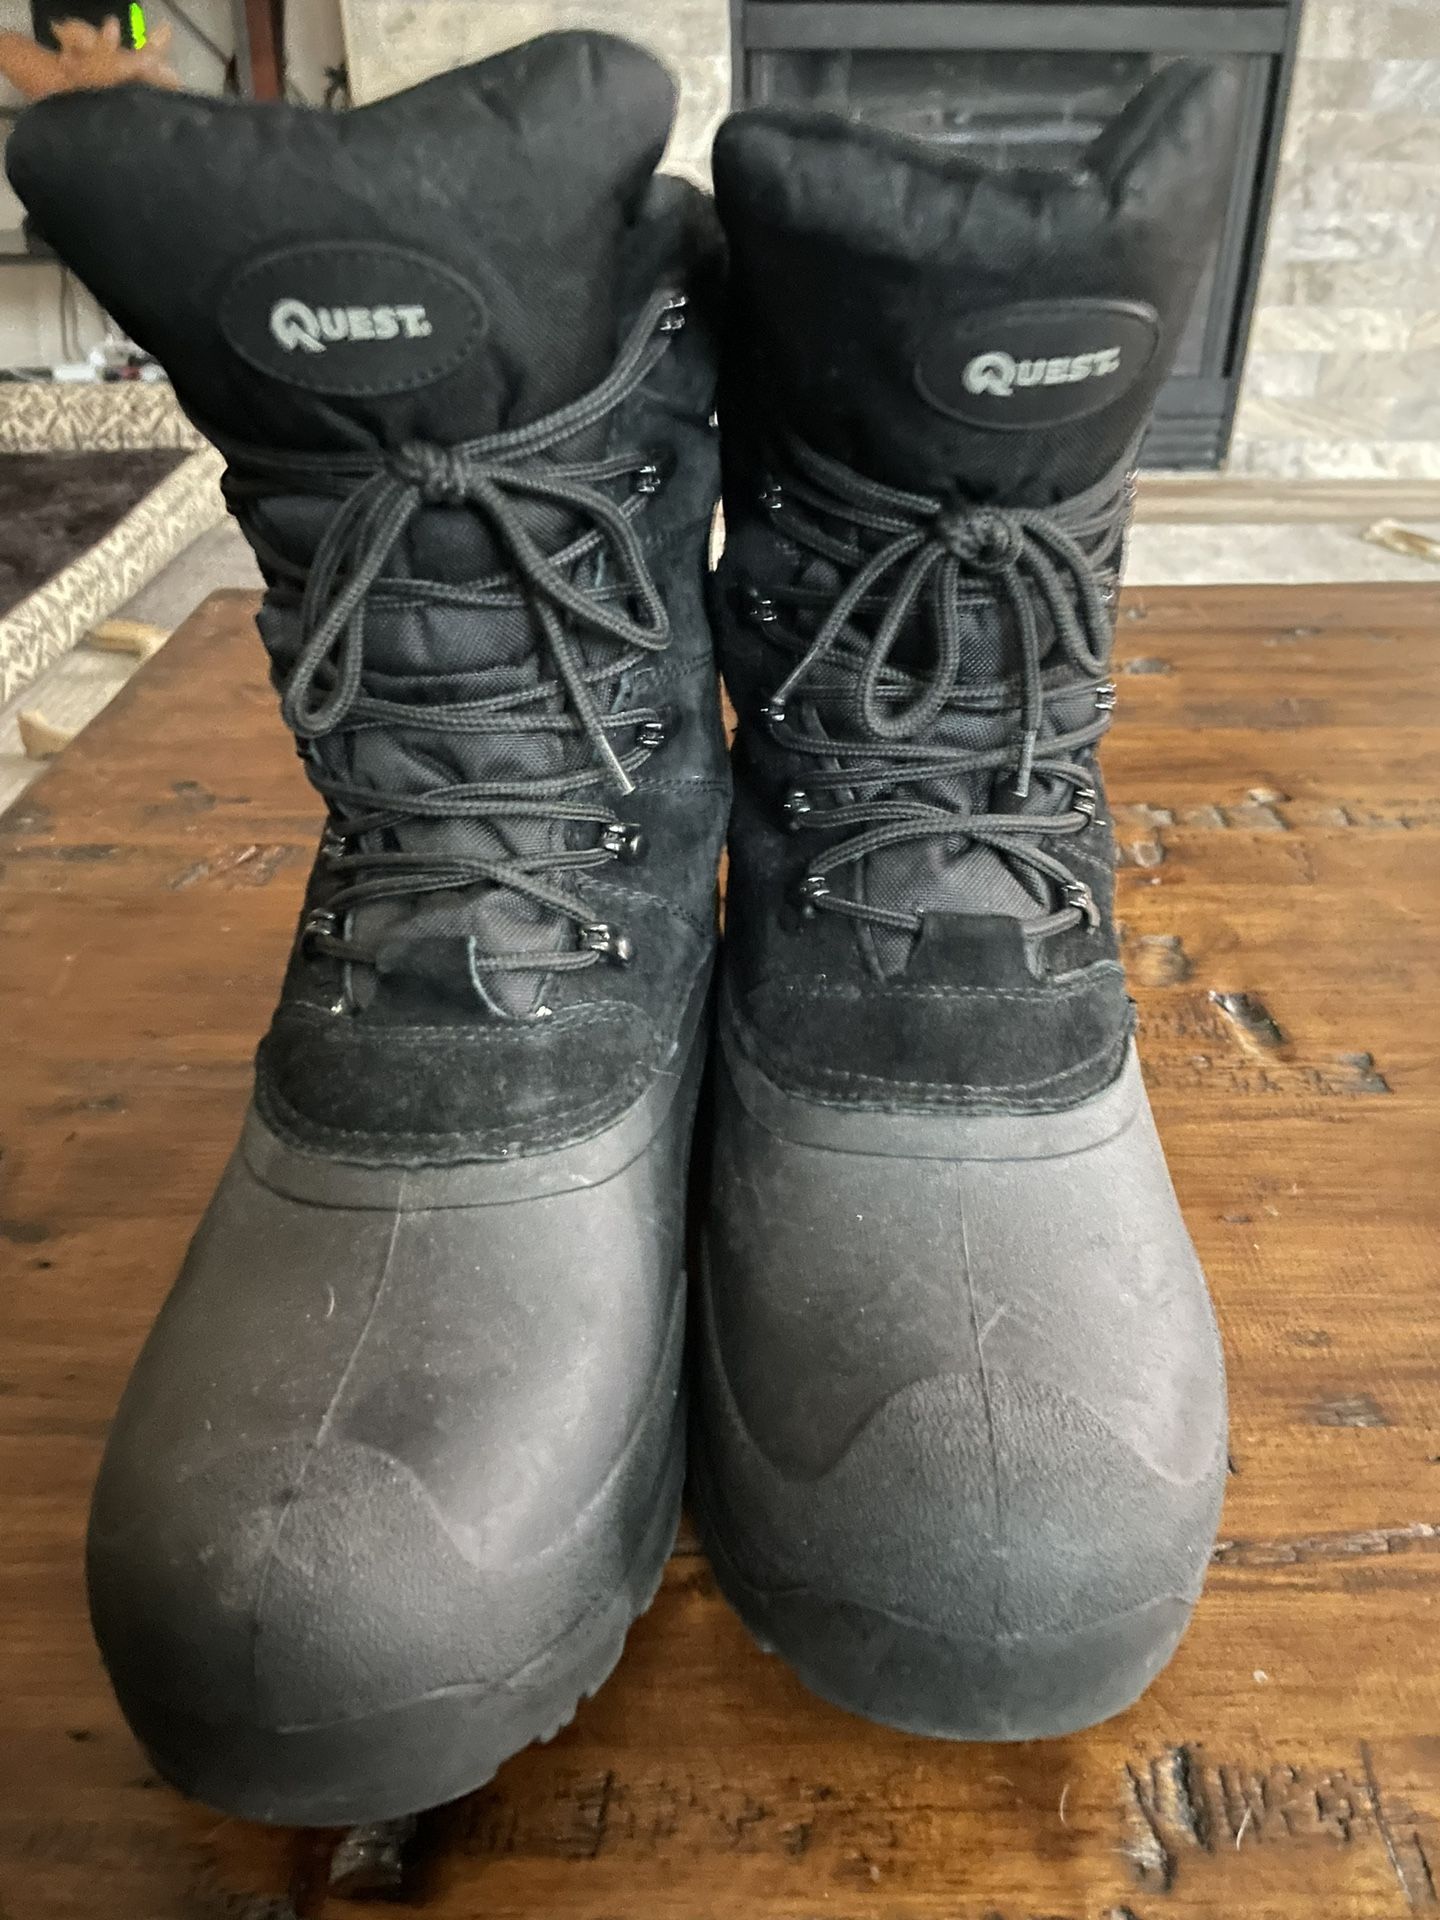 Quest Men’s Size 10 New Snow Boots